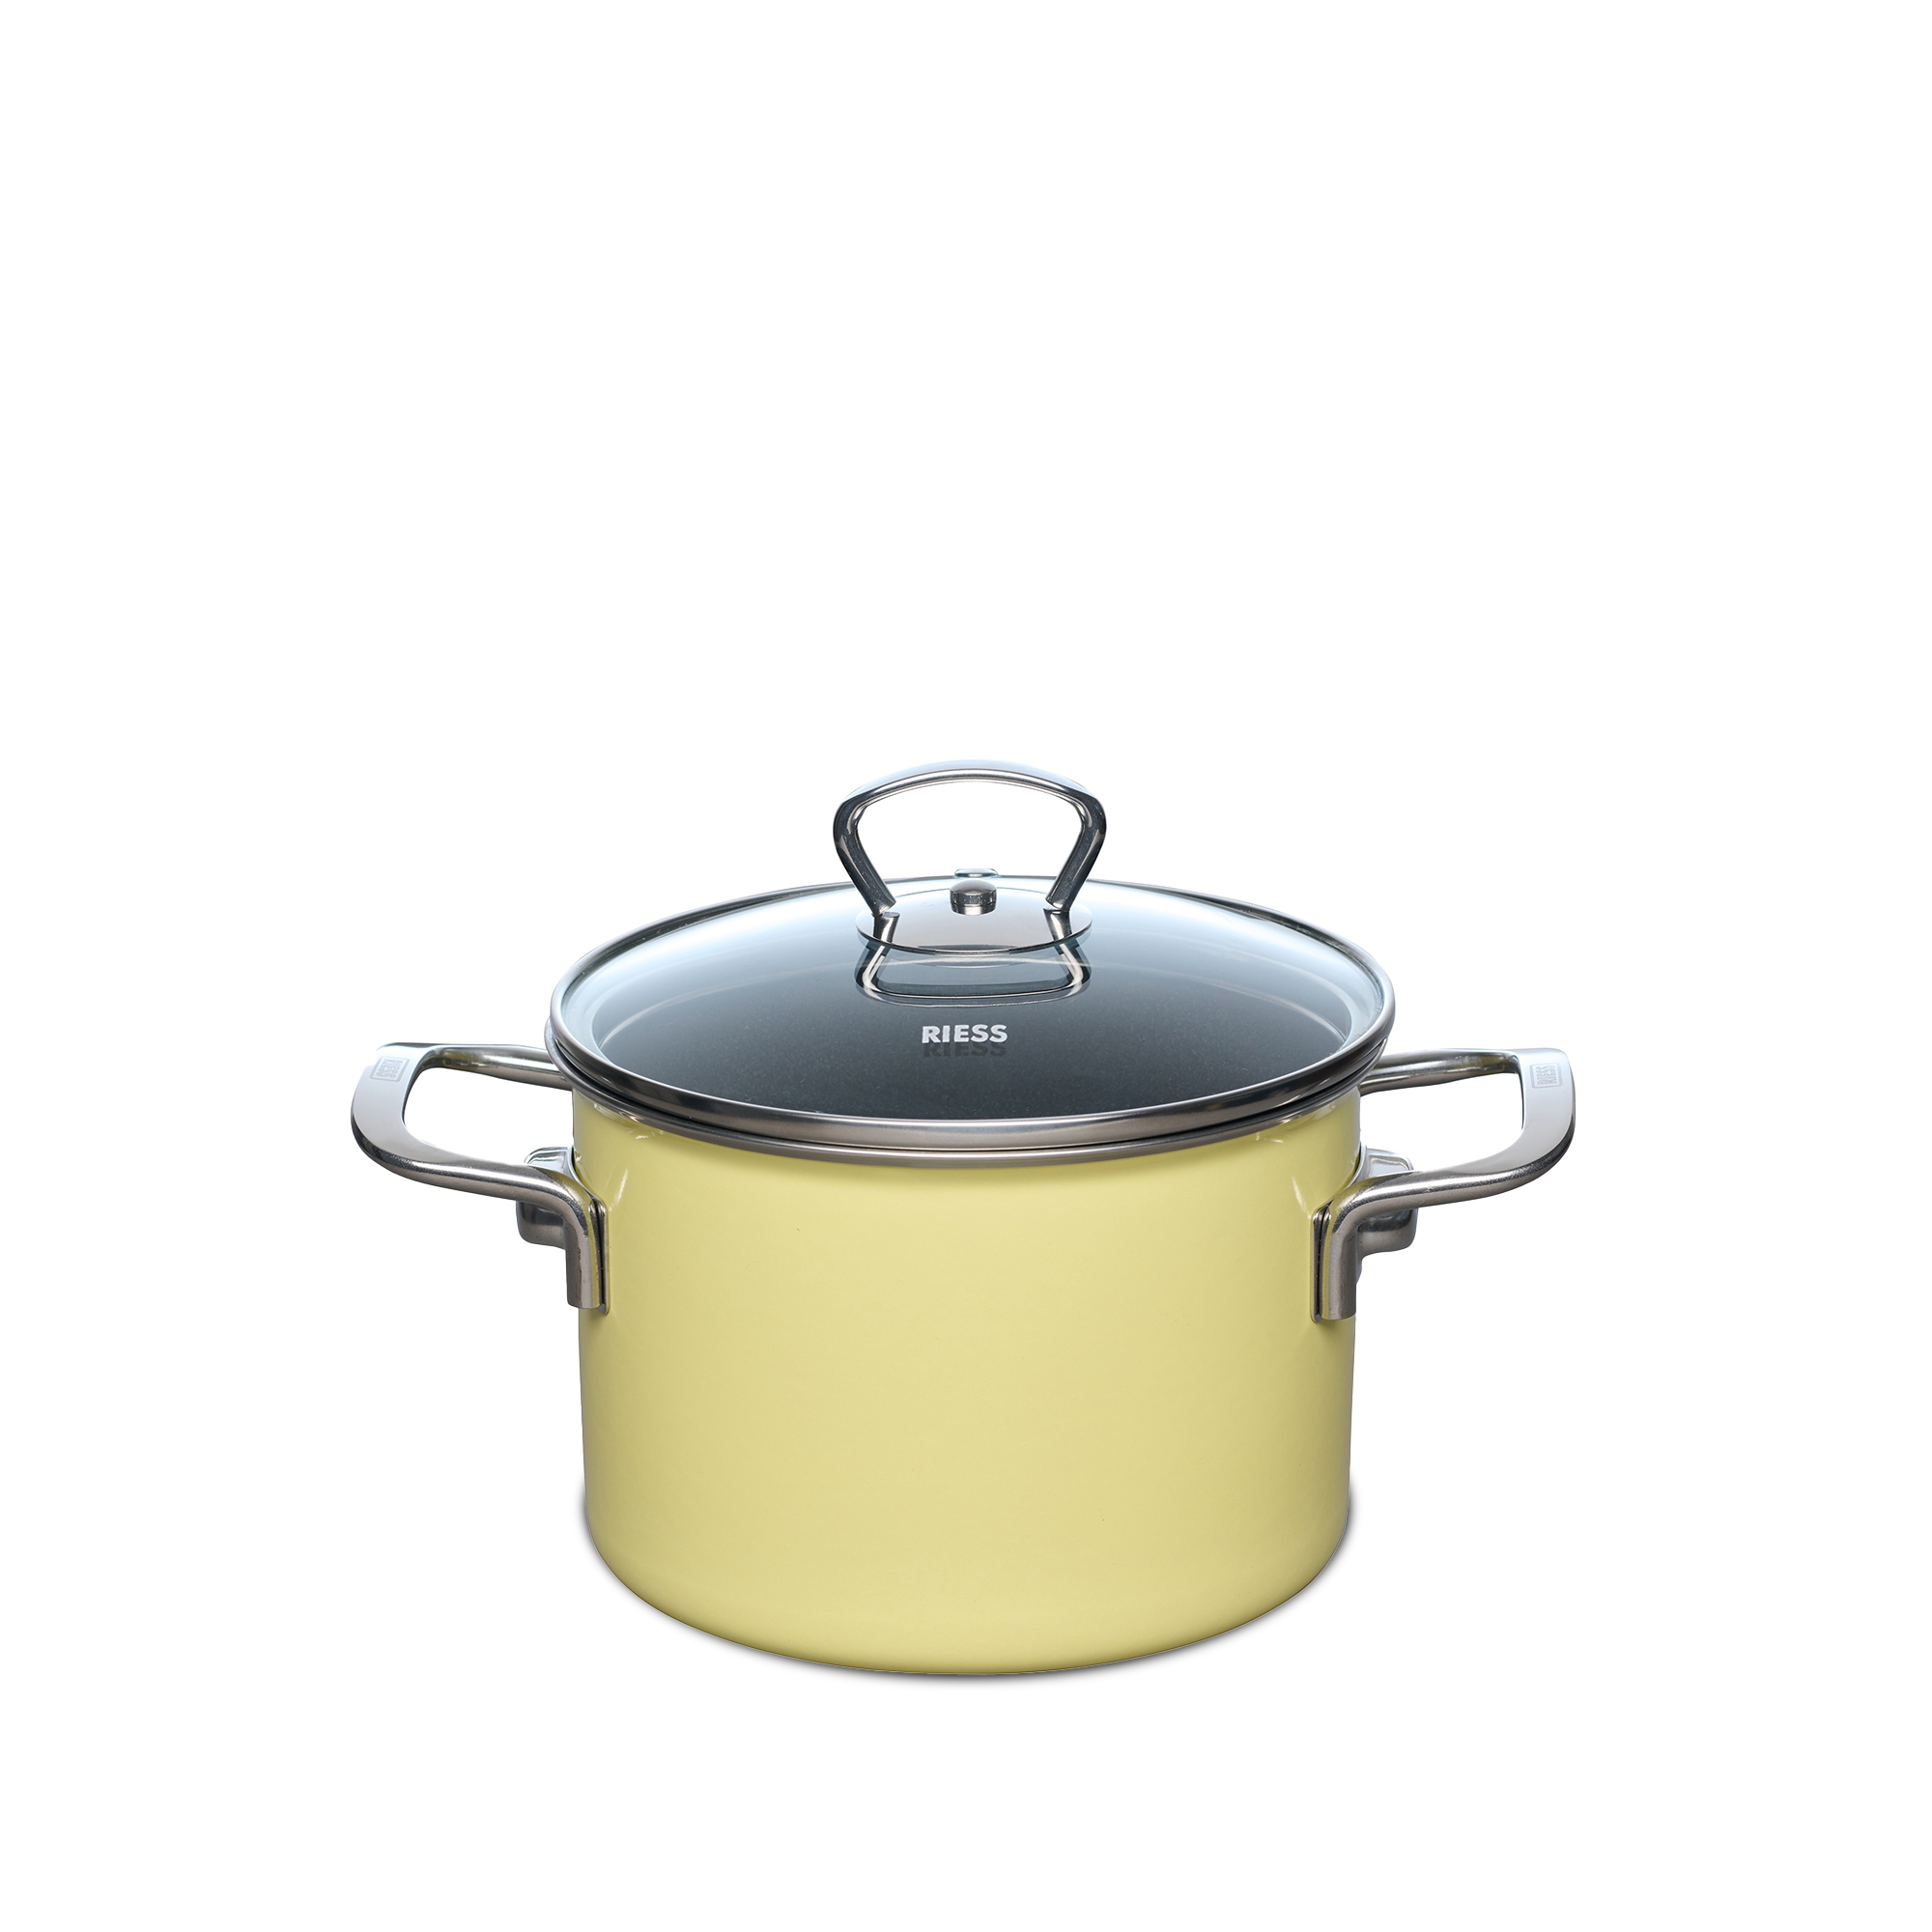 Riess - NOUVELLE PUR - Lemon - meat pot with glass lid 16 cm